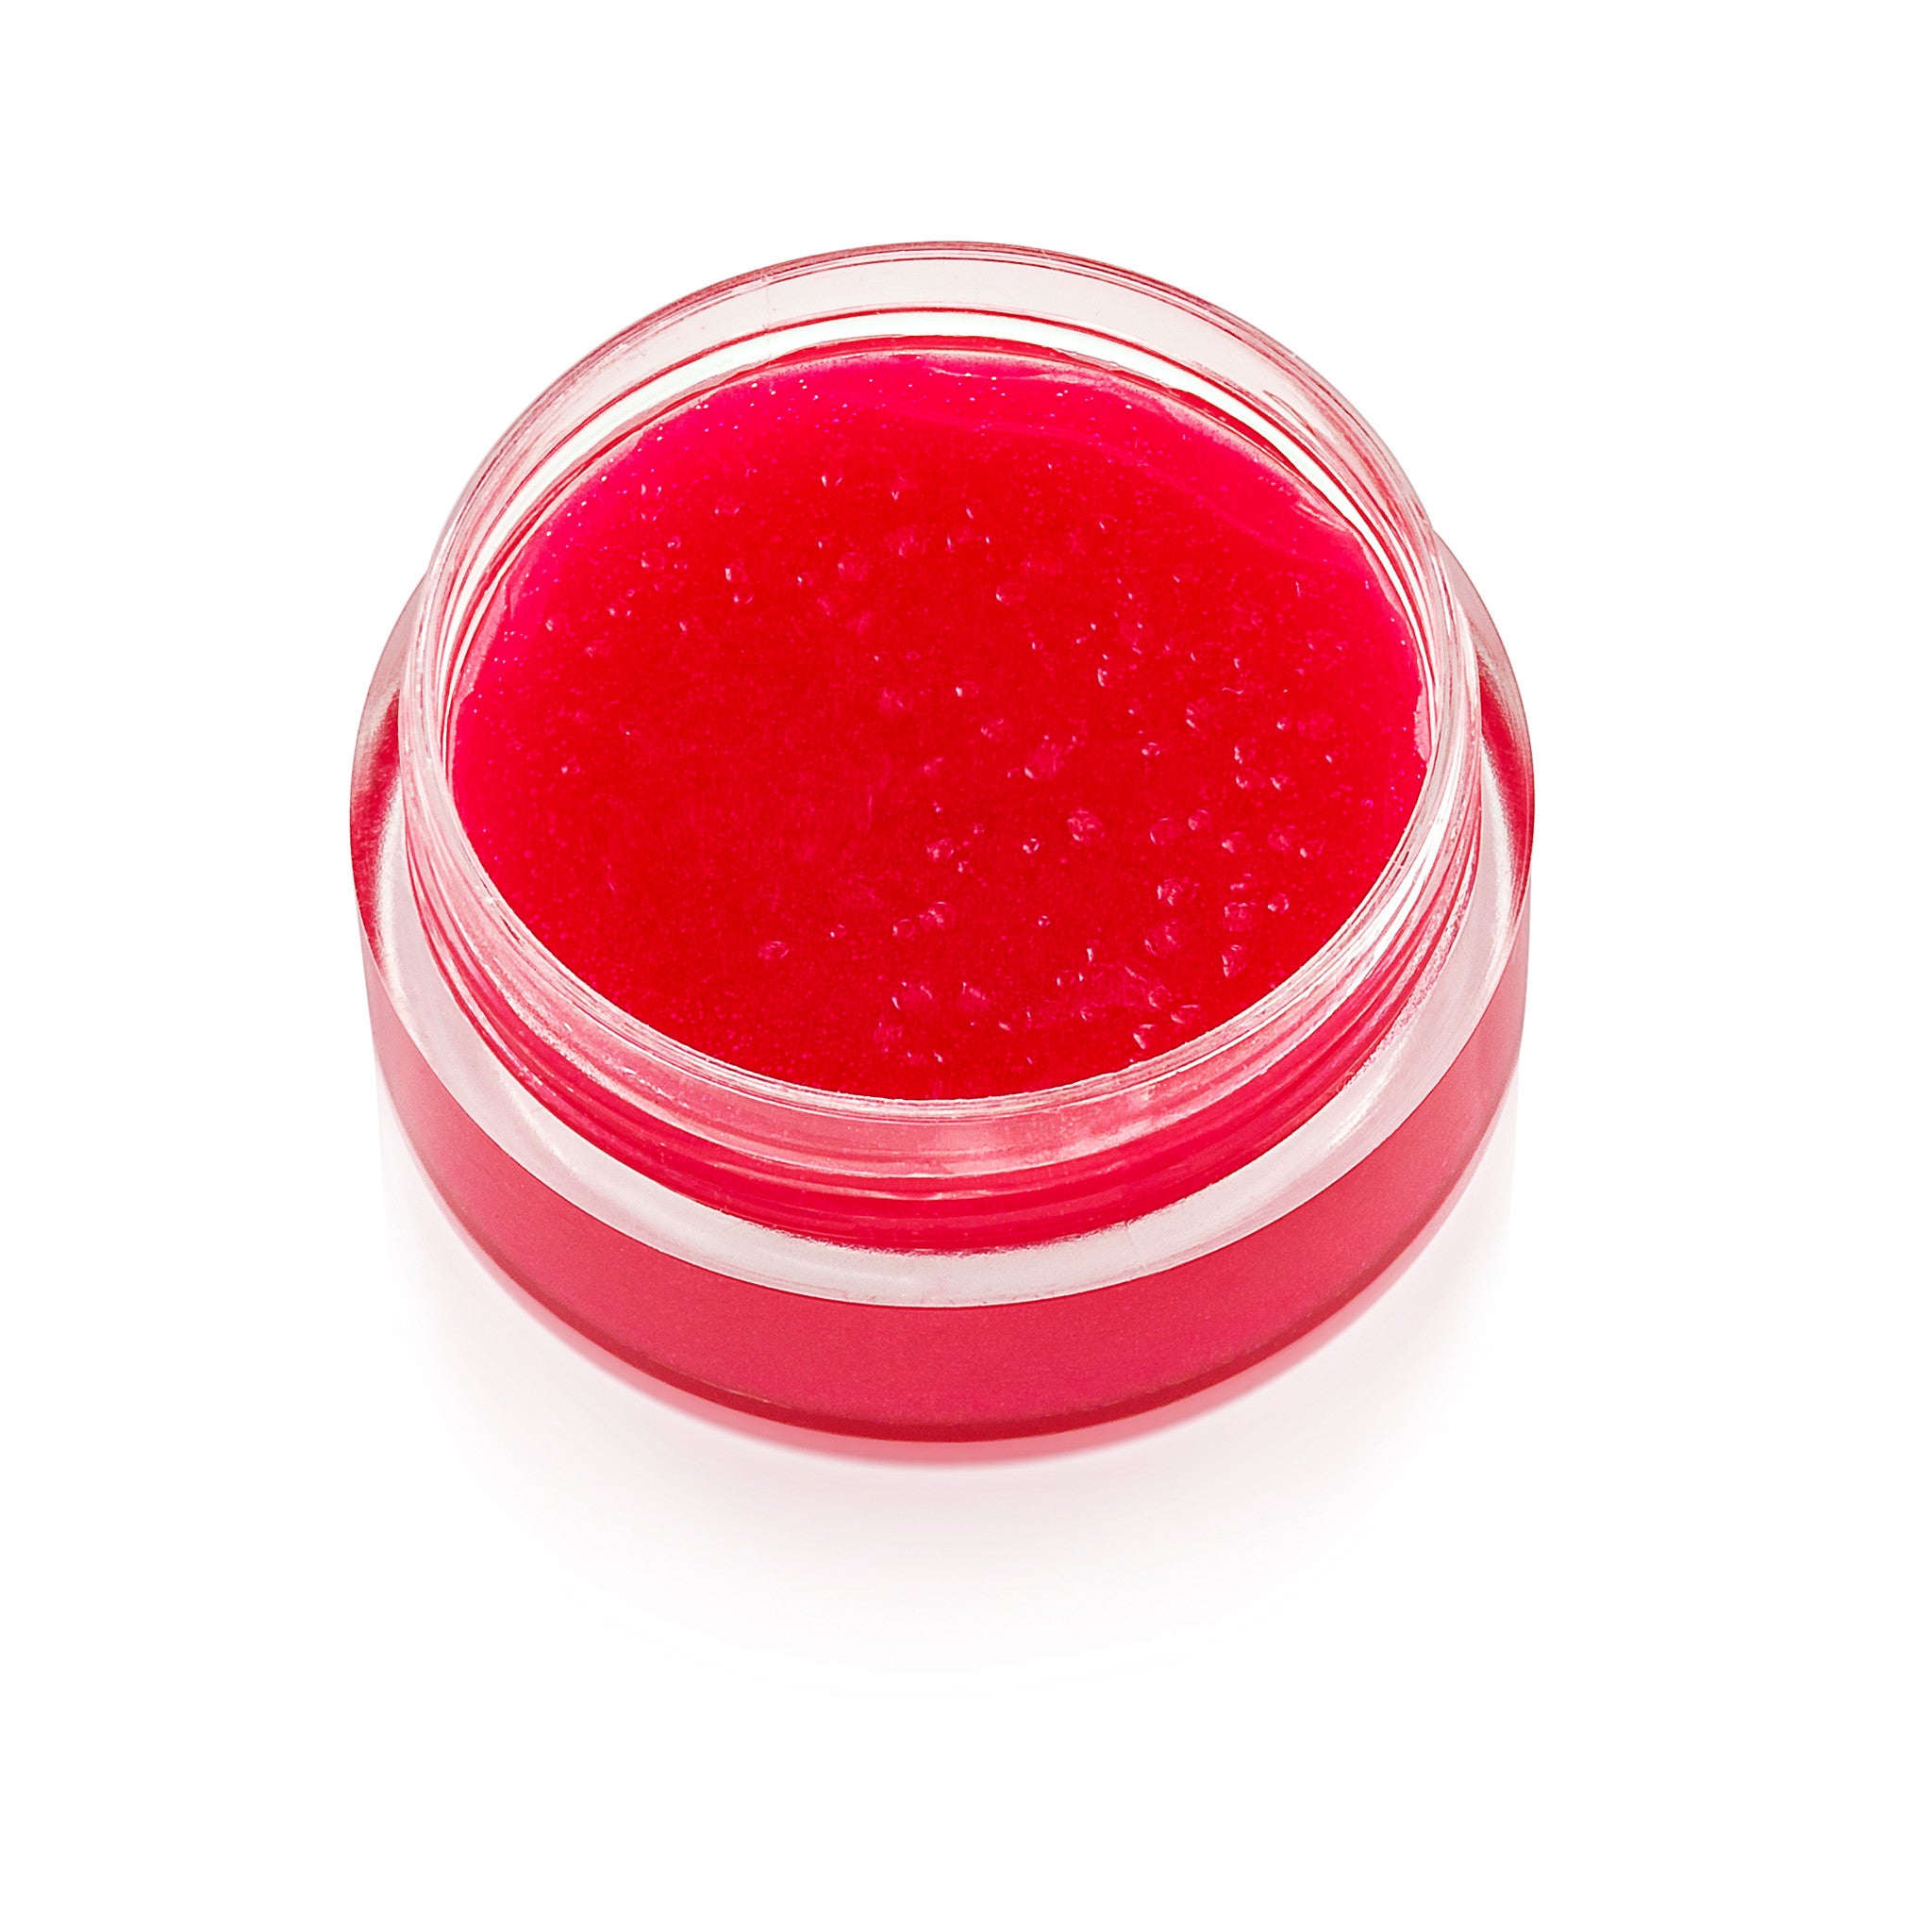 candy pink lip gloss